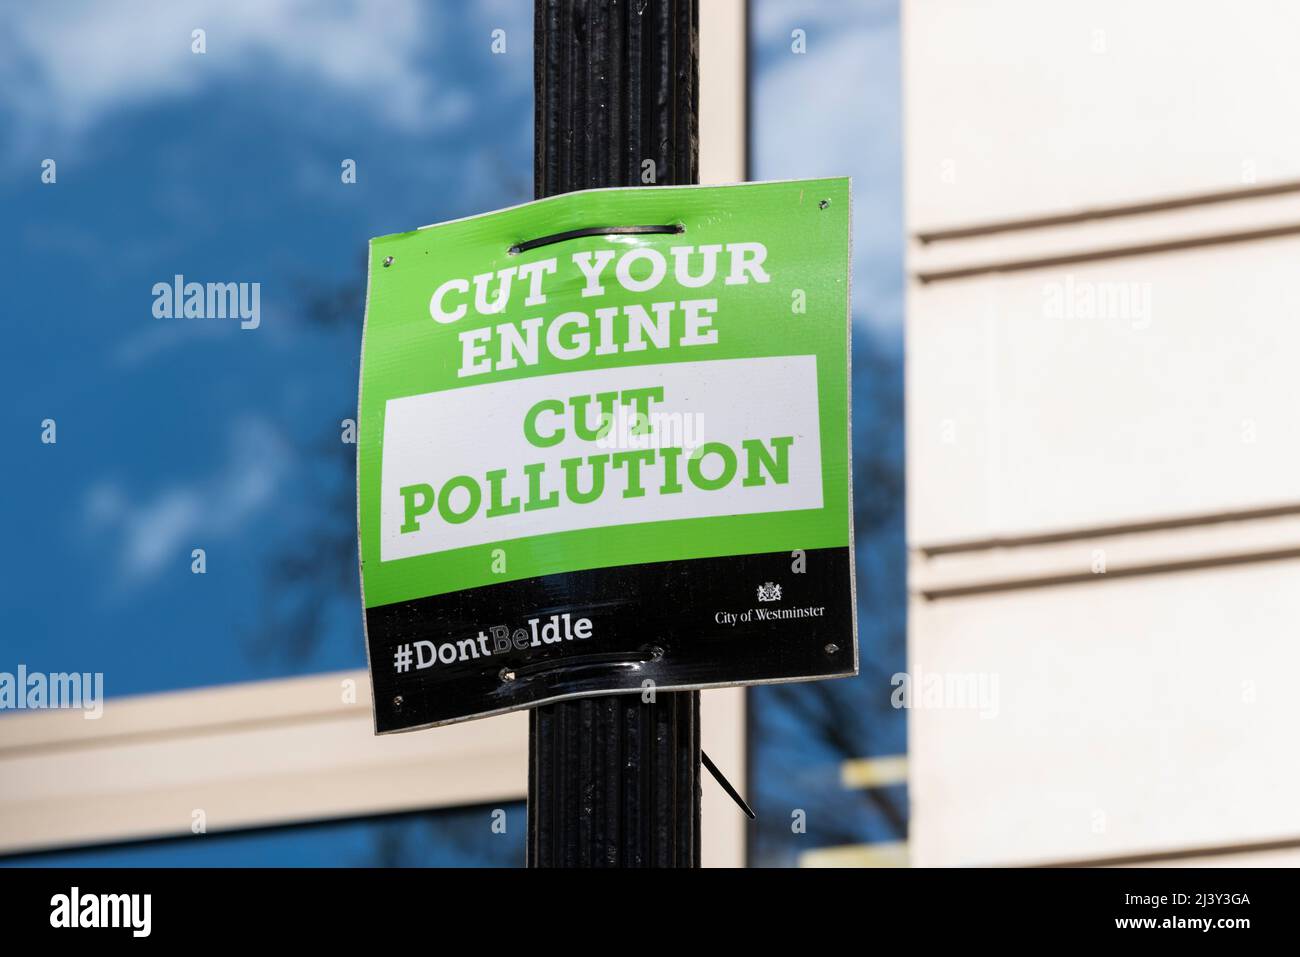 Réduire la pollution, couper le moteur, signe. Campagne environnementale de la ville de Westminster. Le hashtag ne sera pas inactif Banque D'Images